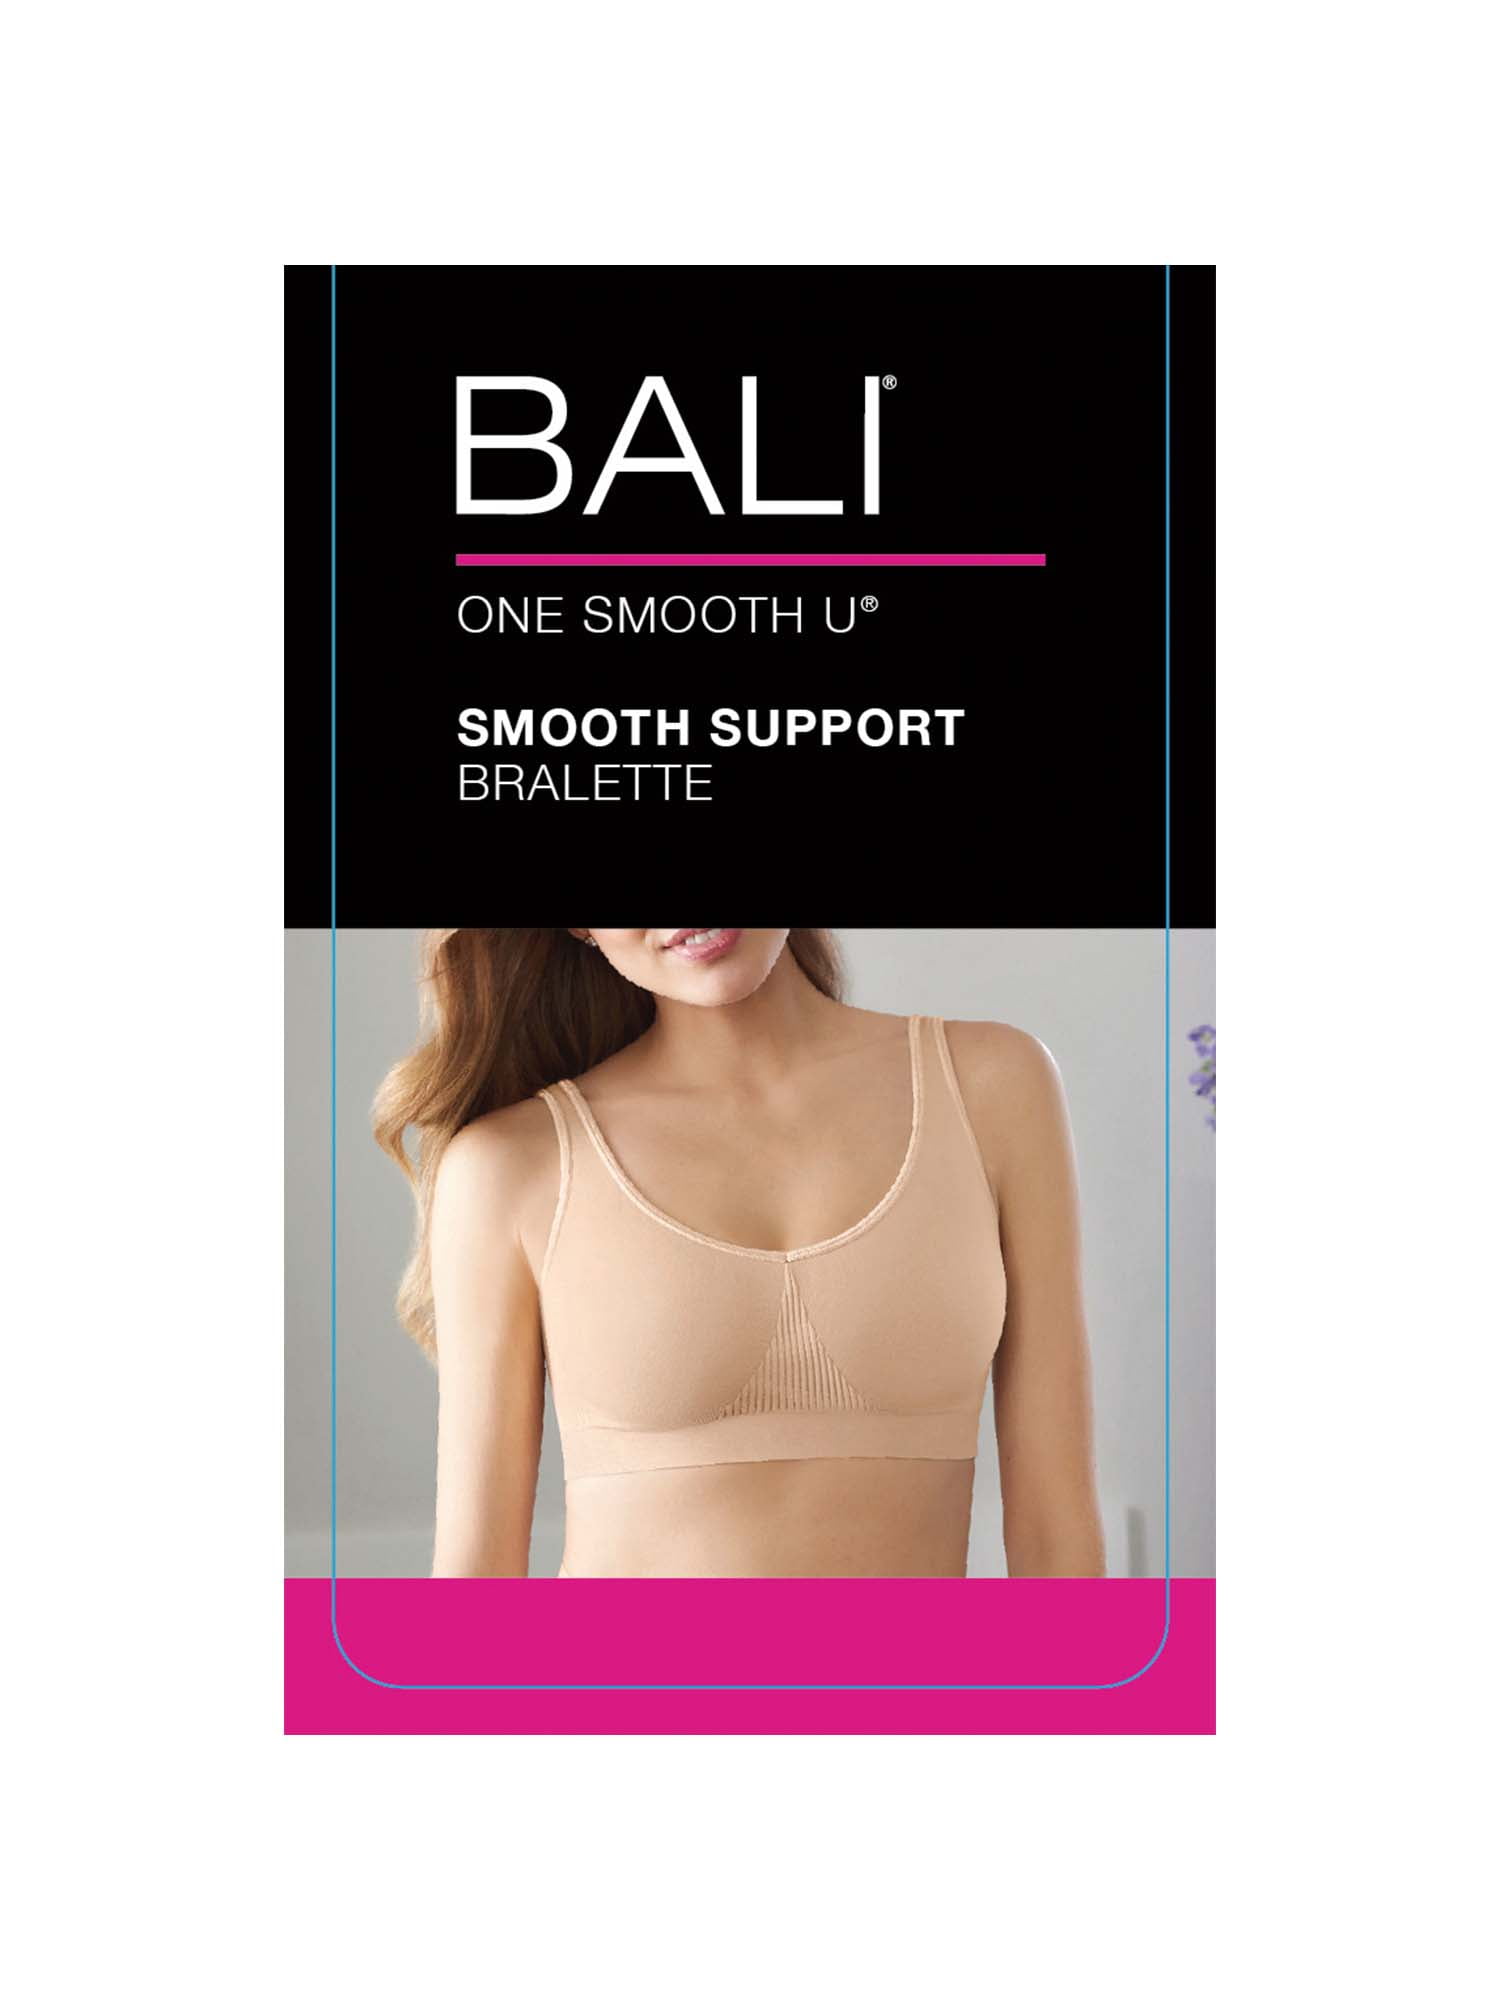 Bali Bralette One Size Cup Women's Bras & Bra Sets for sale